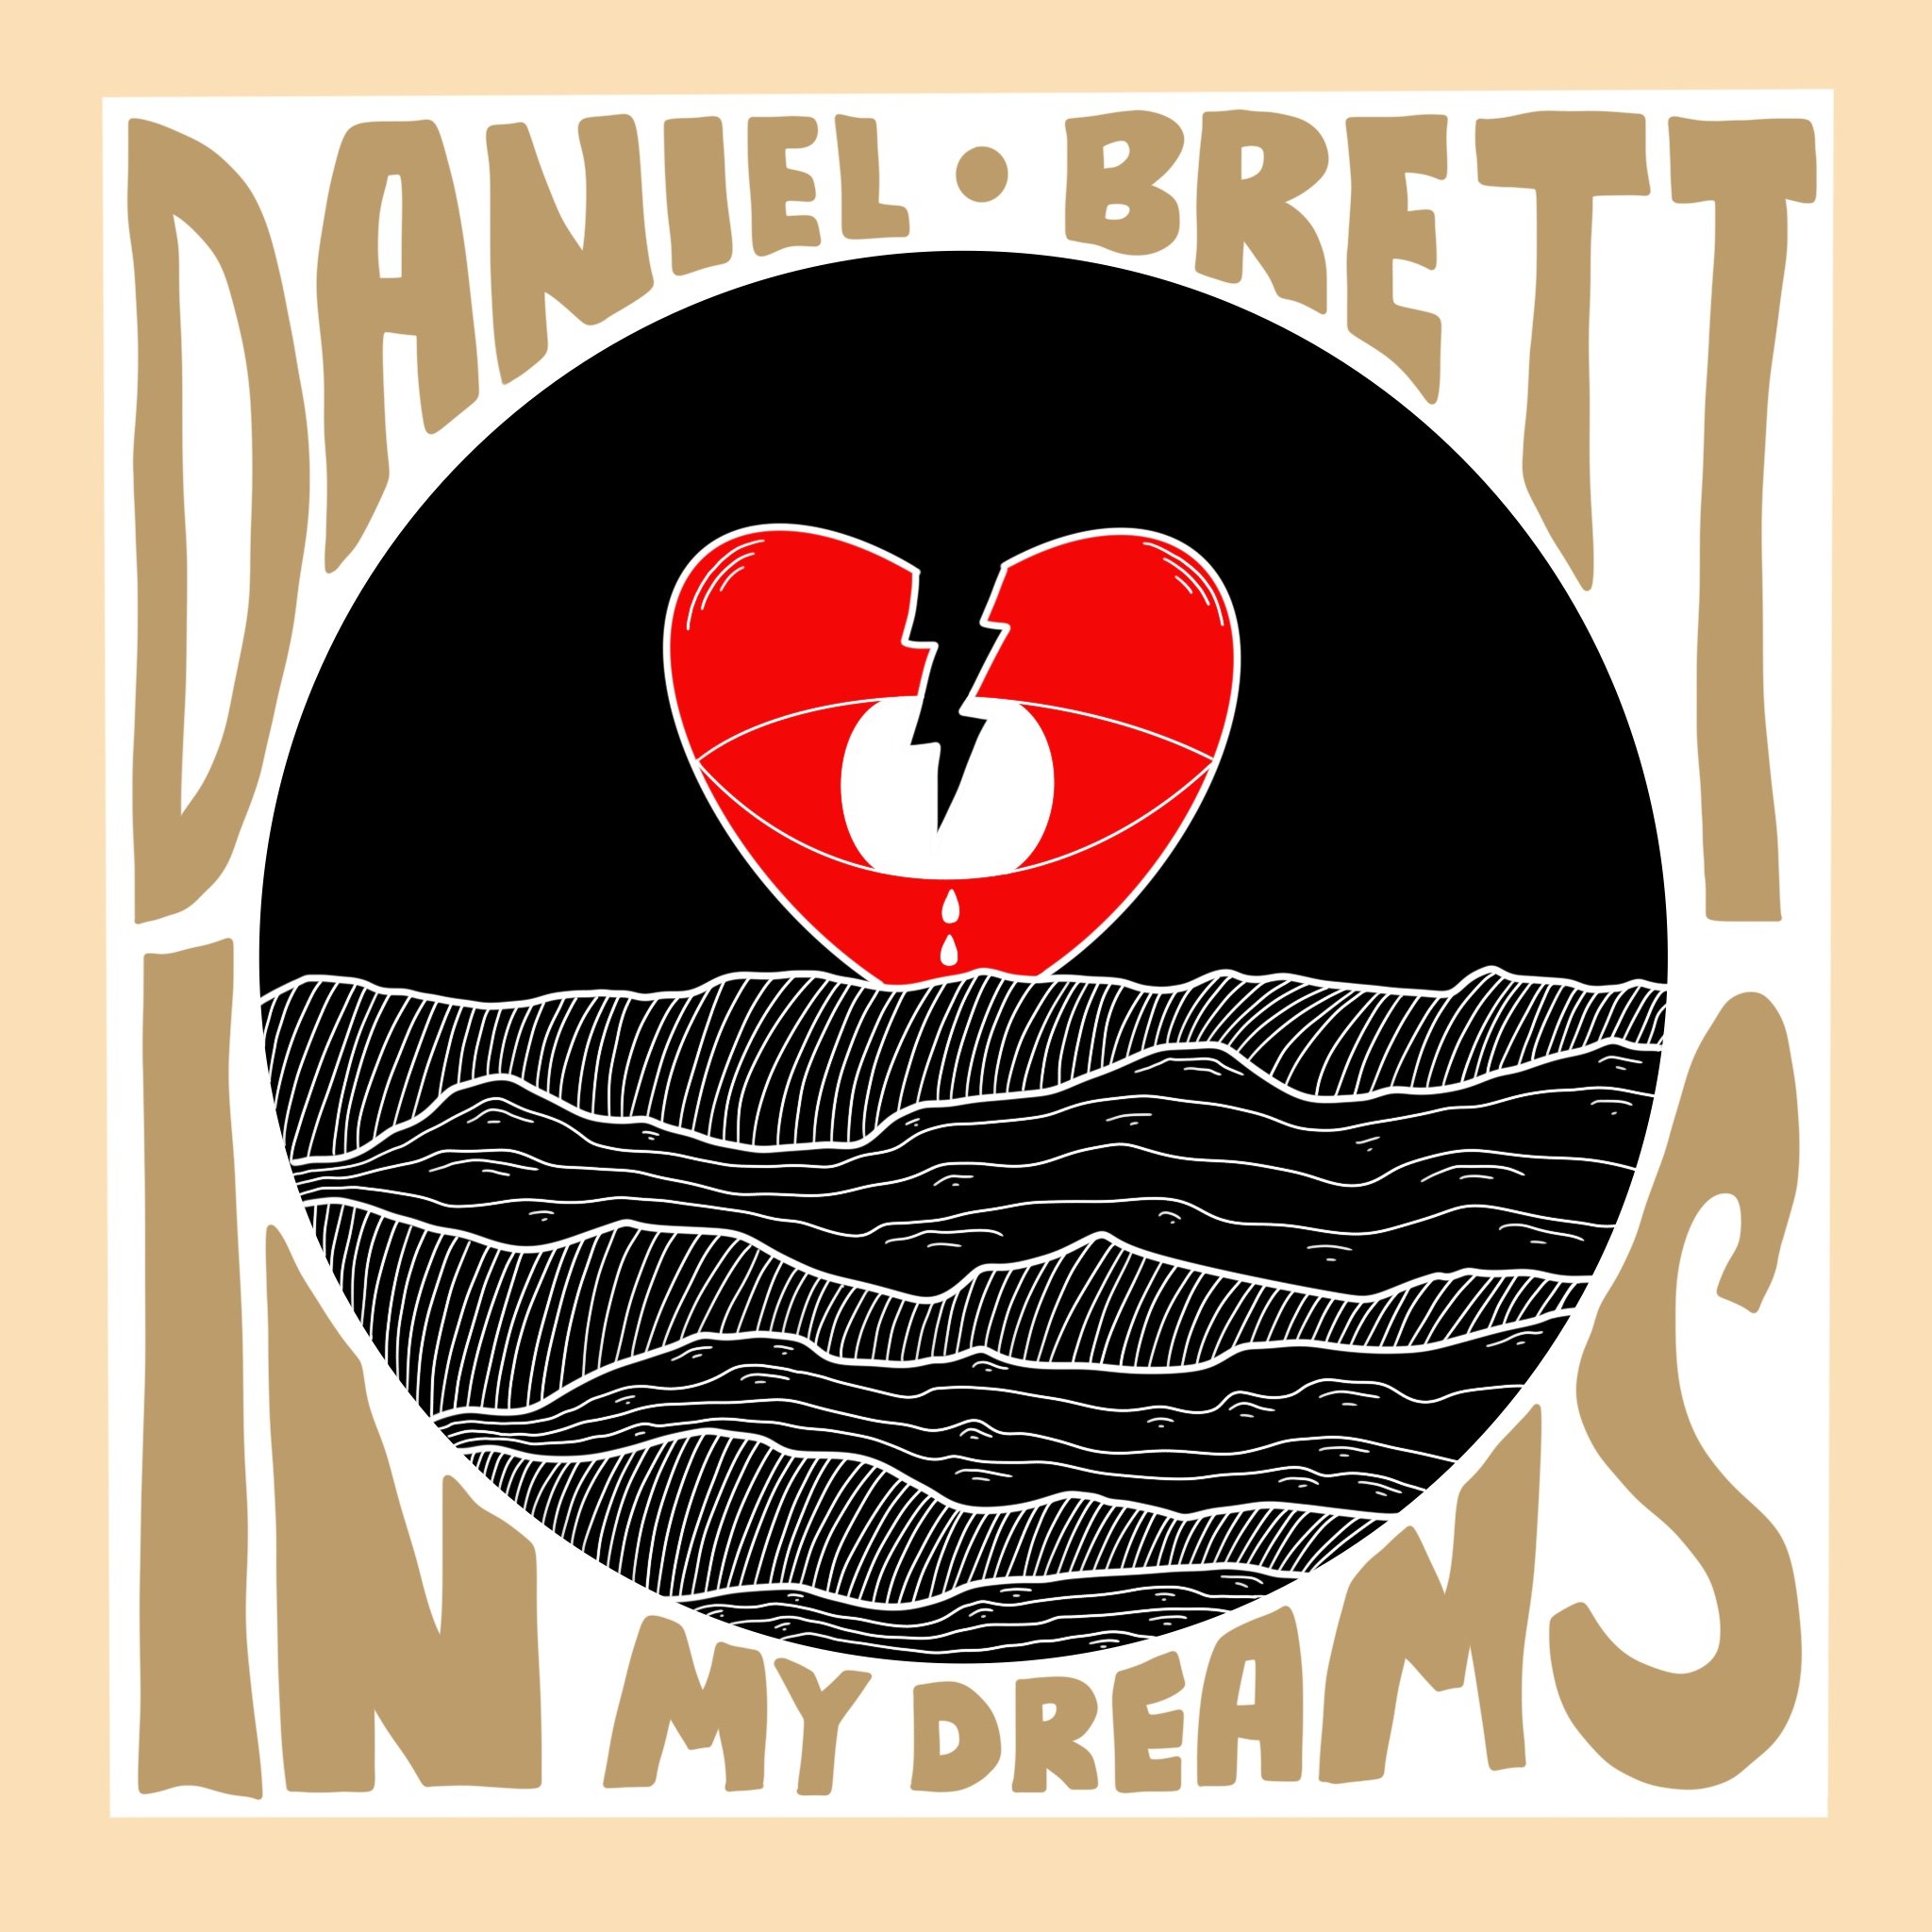 Daniel Brett "In My Dreams" Single Art